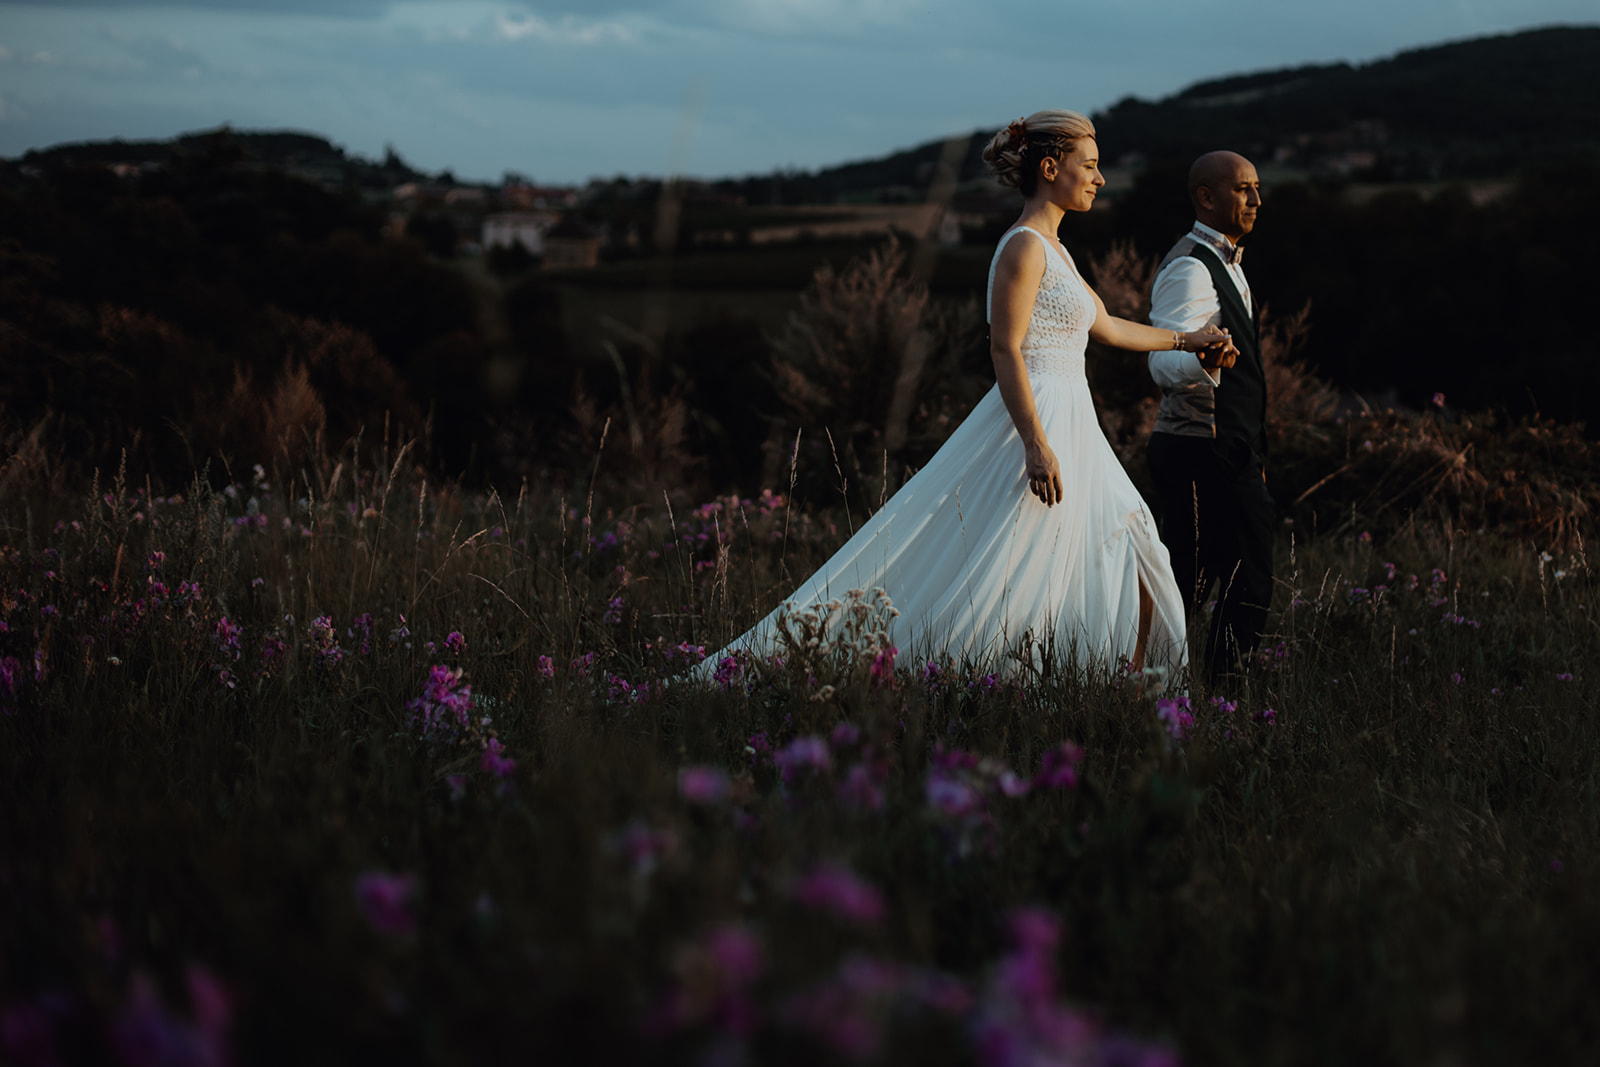 Duo photographe de mariage Castille ALMA et David POMMIER pour ne rien rater de chaque instant de joie de votre mariage